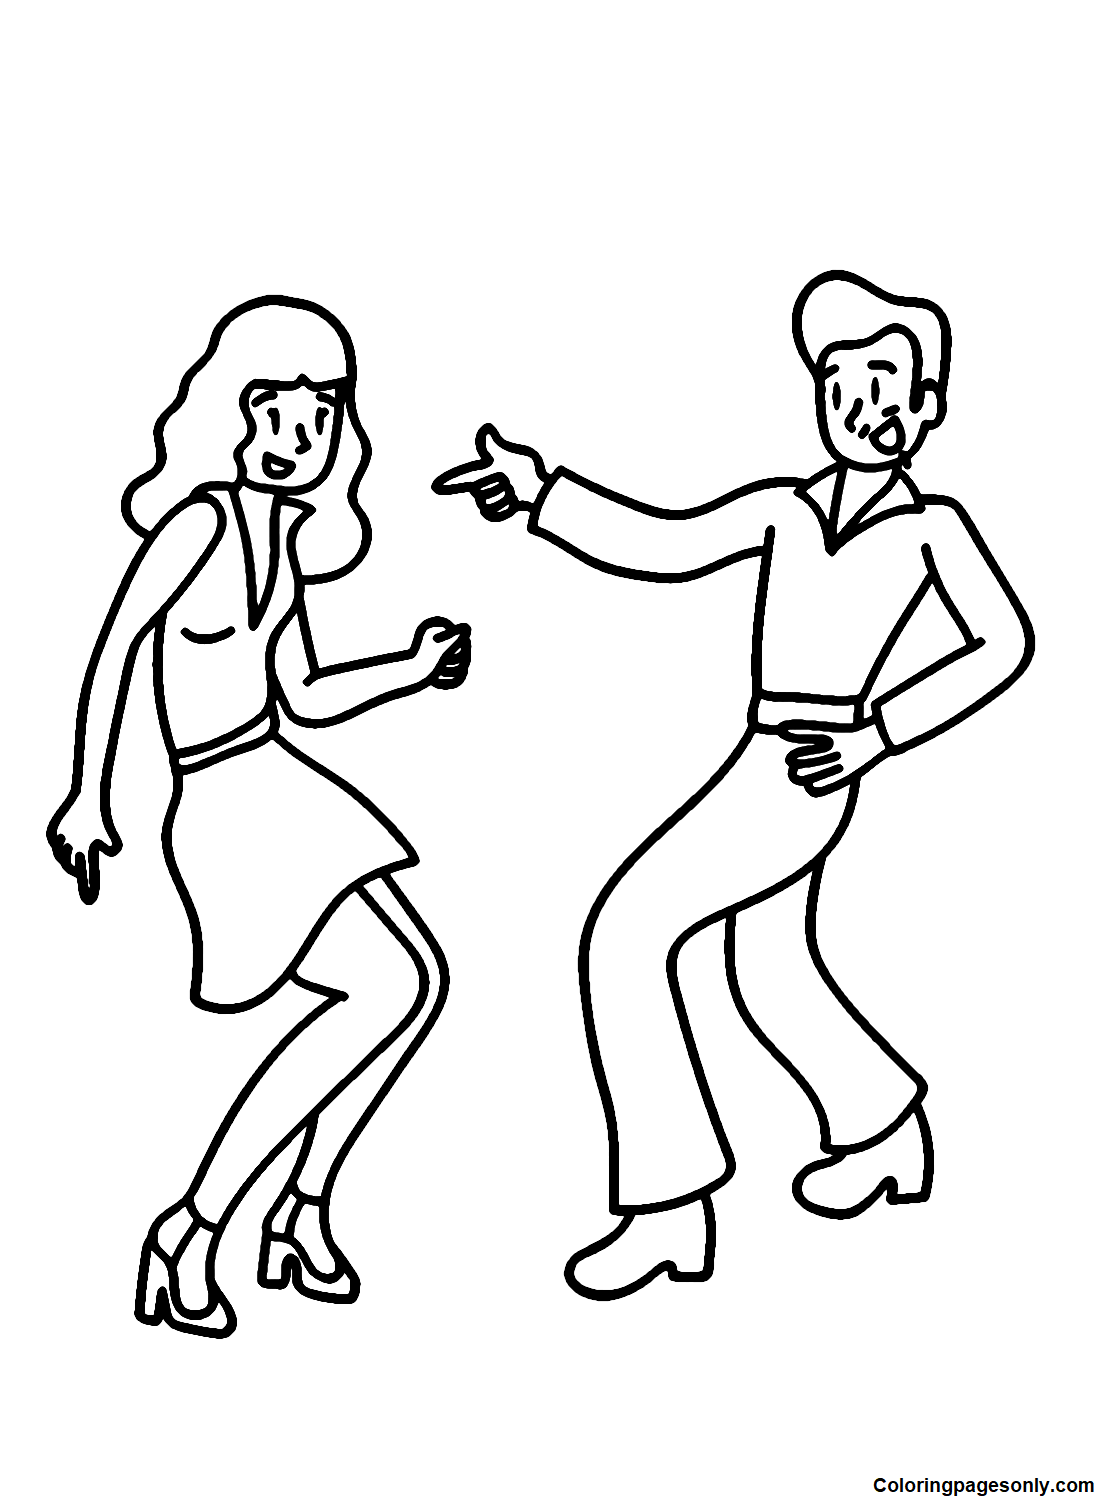 Tanzpaar vom Tanzen